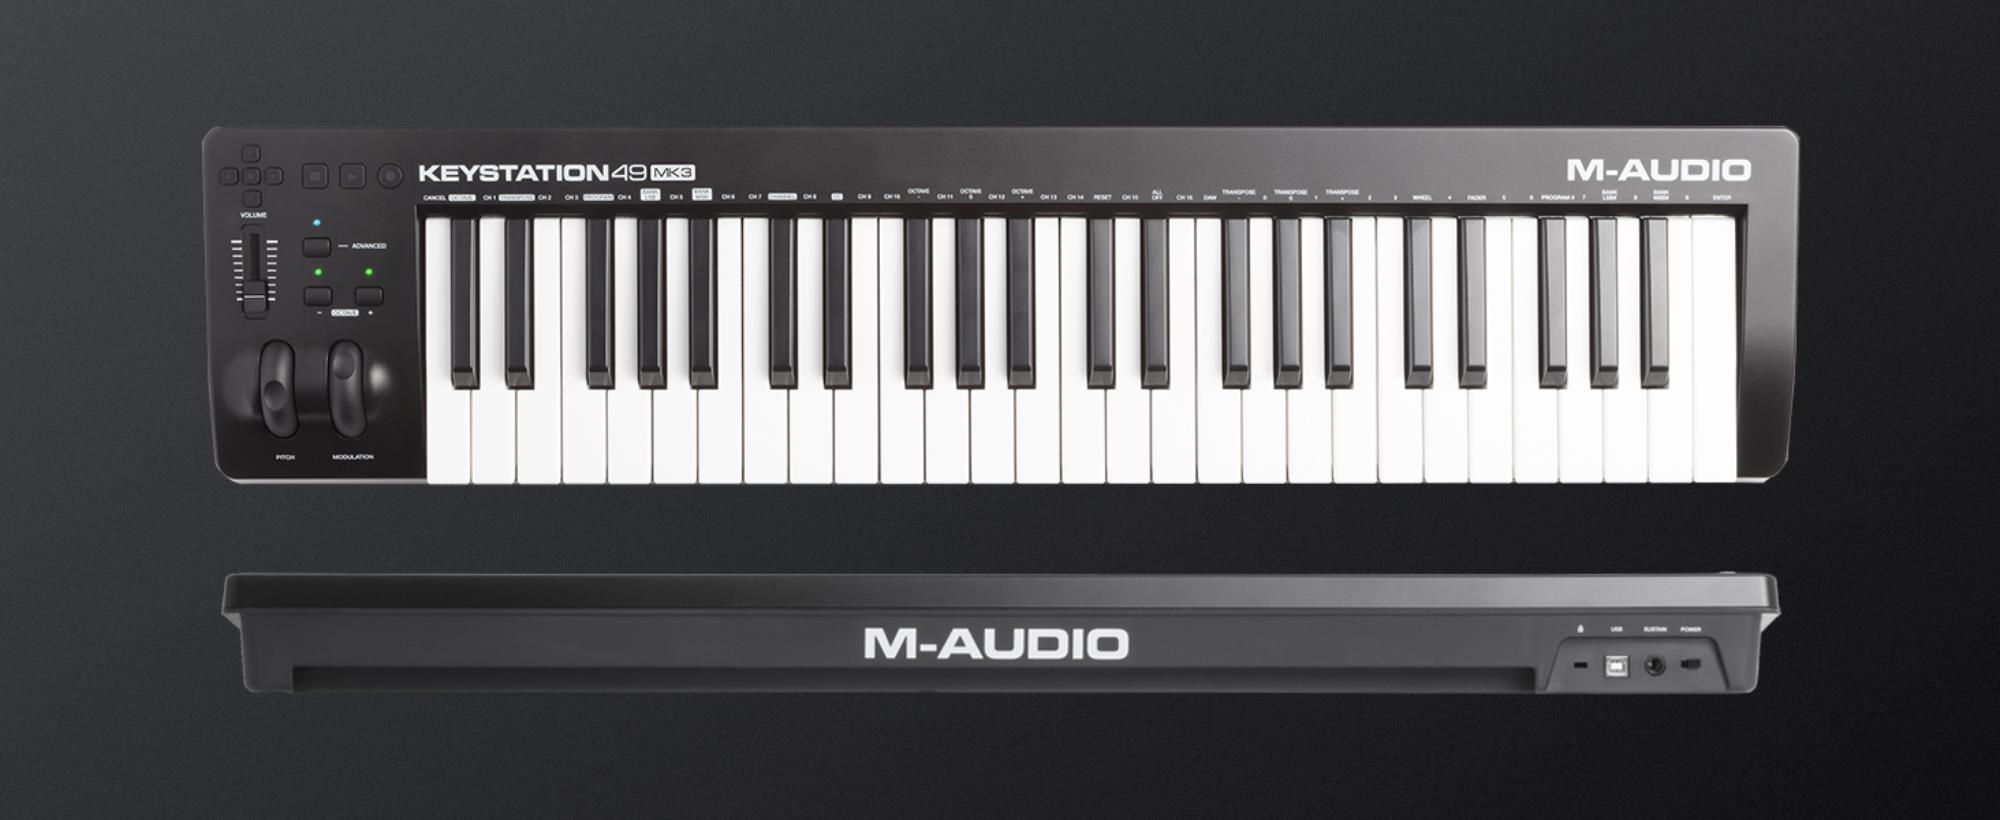 M-AUDIO Keystation 49 MKIII USB MIDI